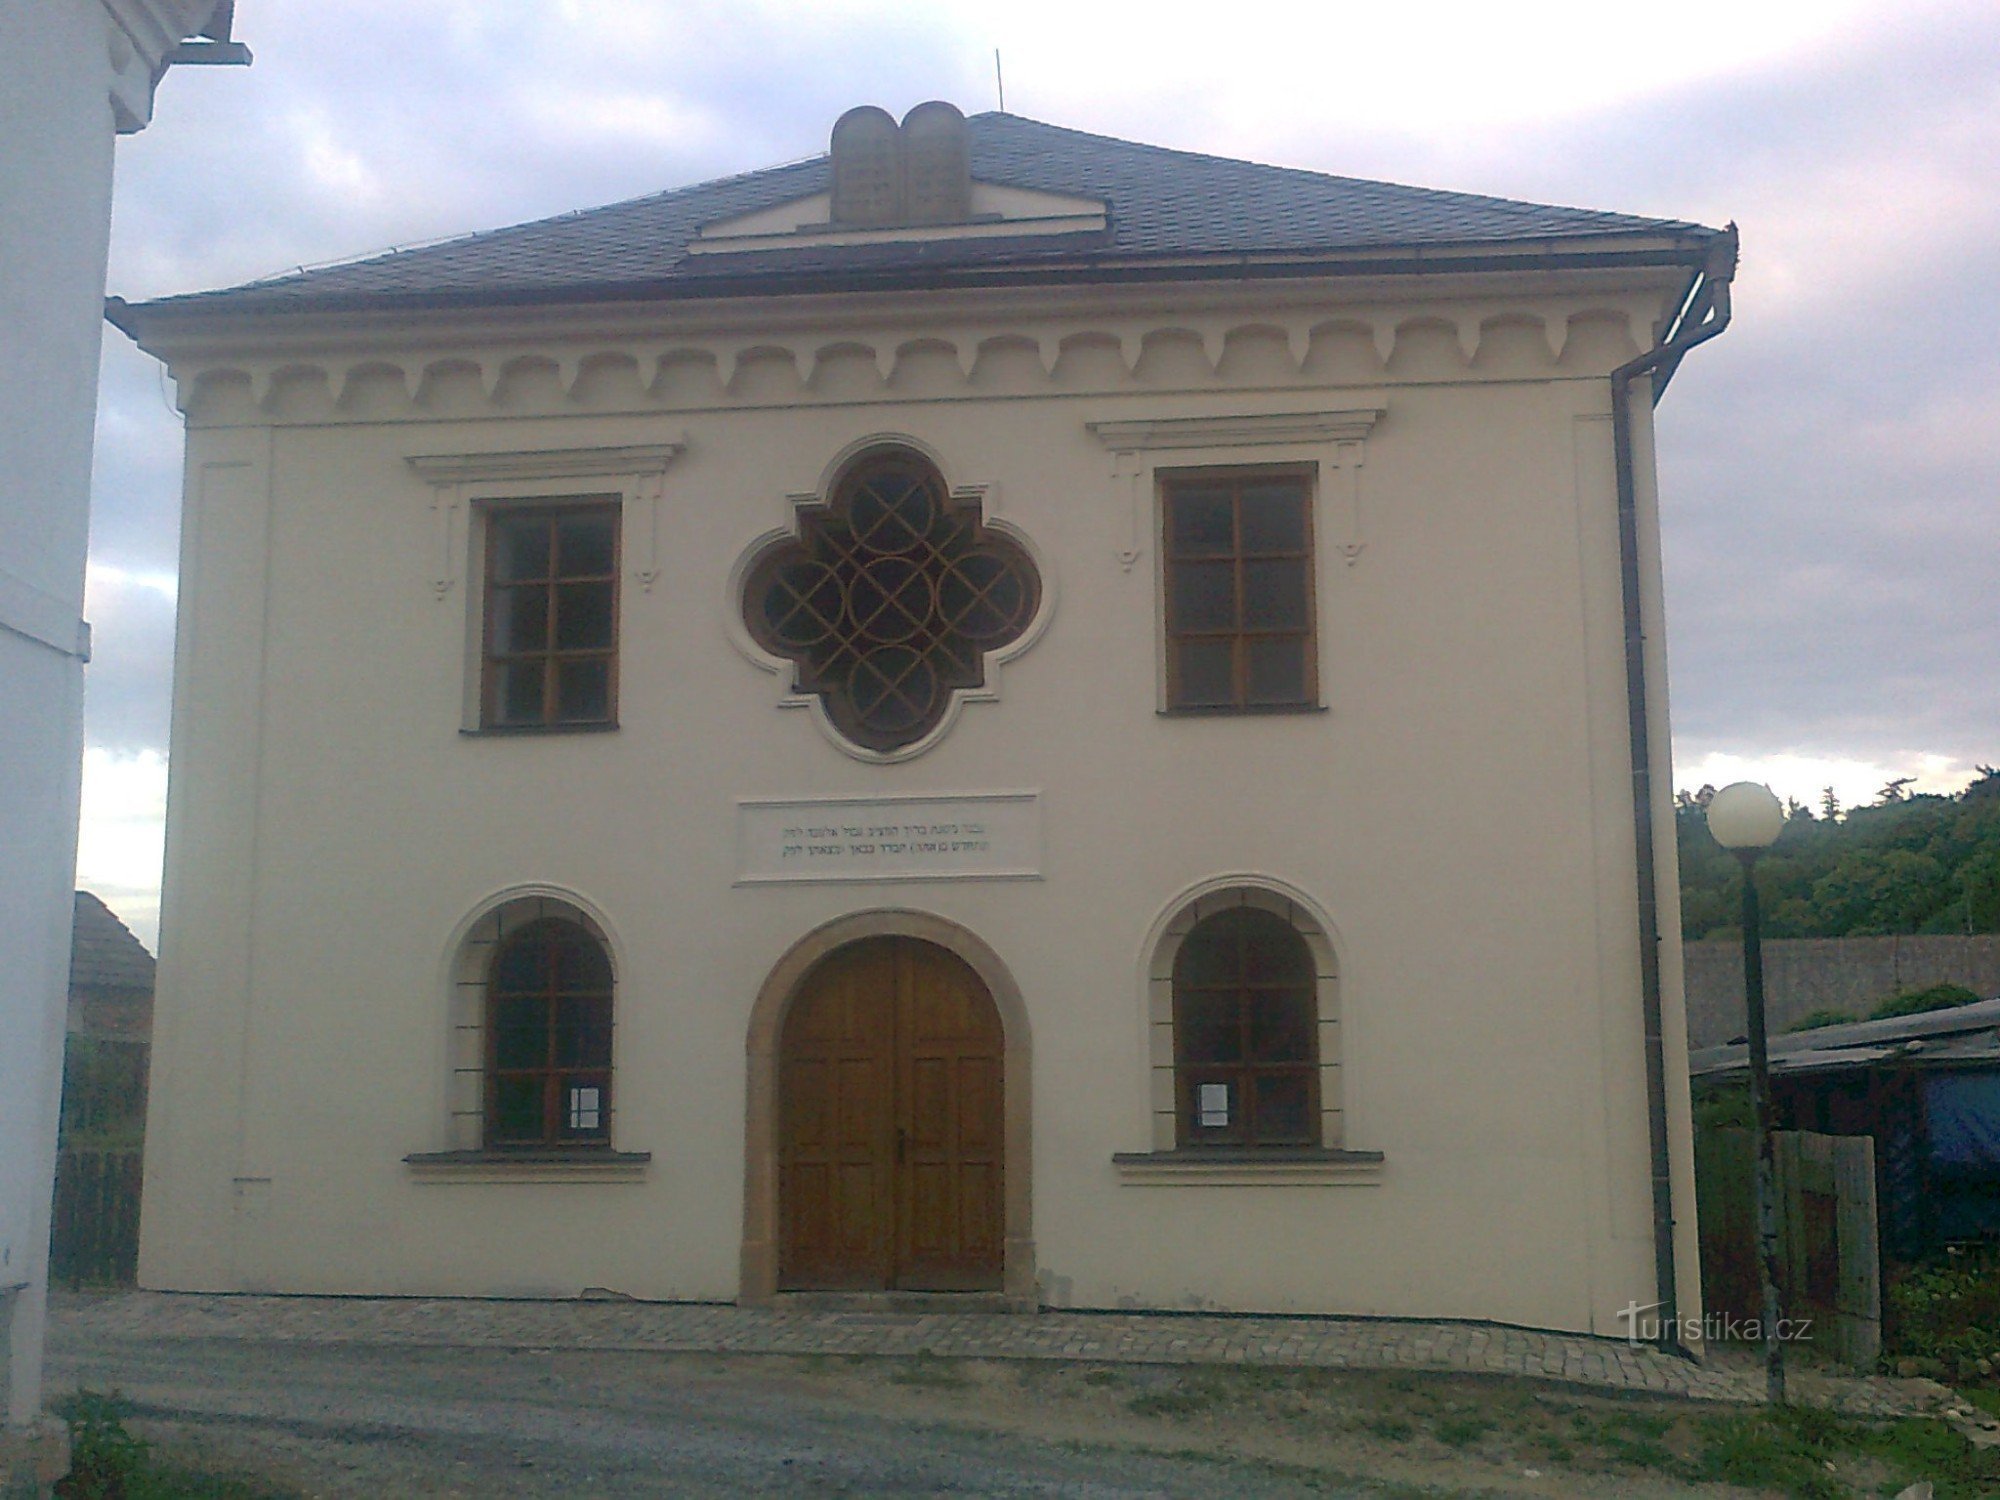 Úsov - judovska sinagoga